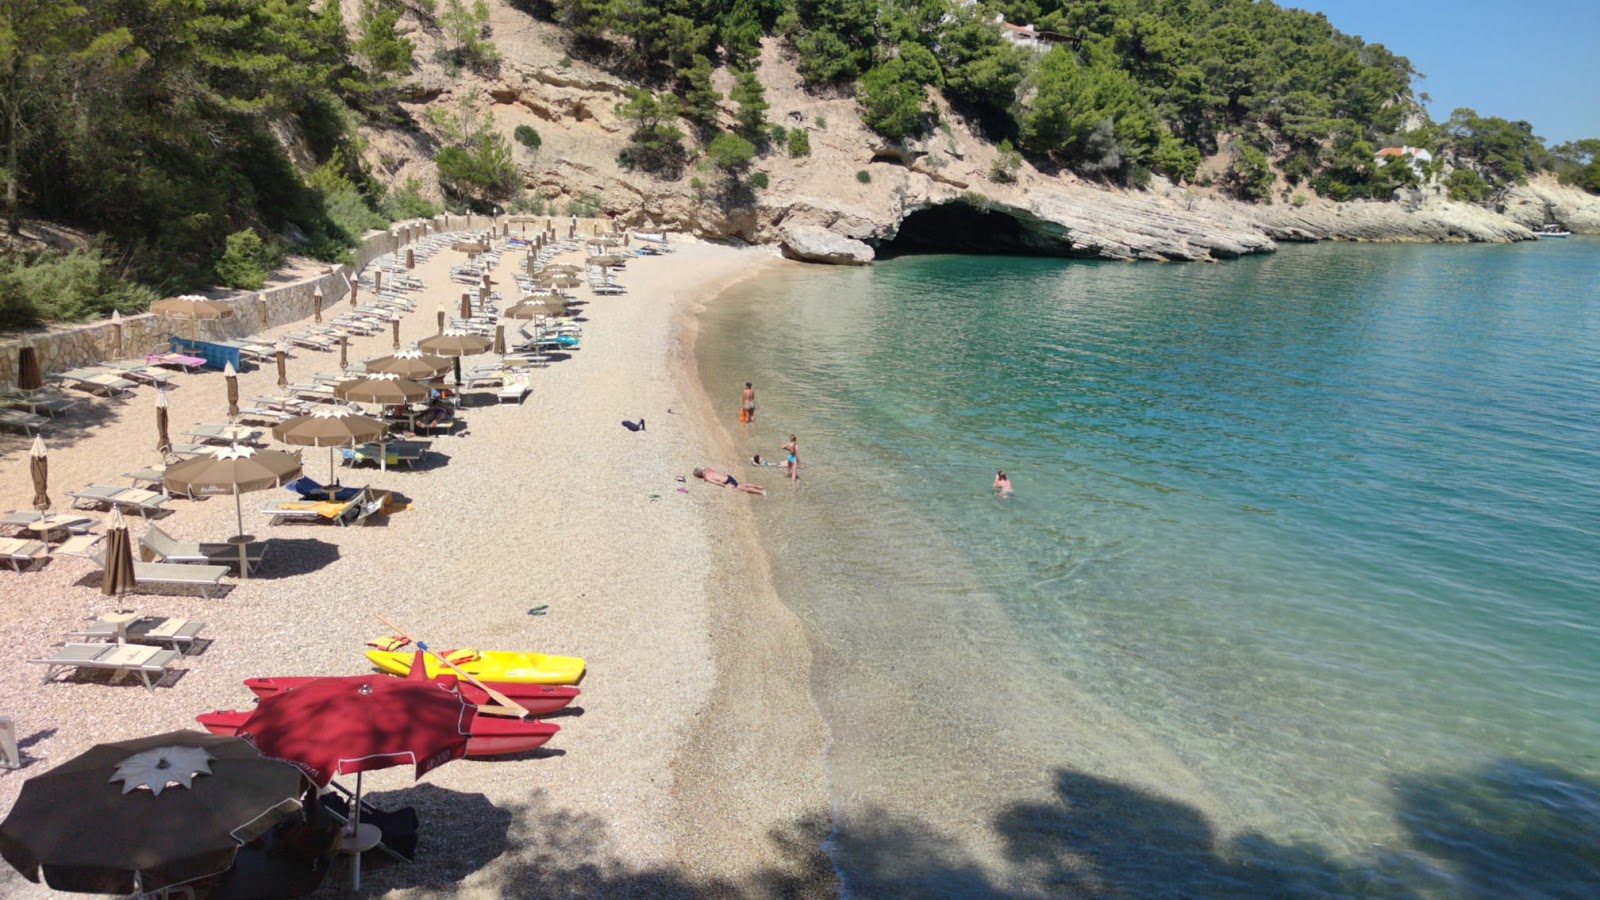 Spiaggia di Portopiatto'in fotoğrafı hafif ince çakıl taş yüzey ile